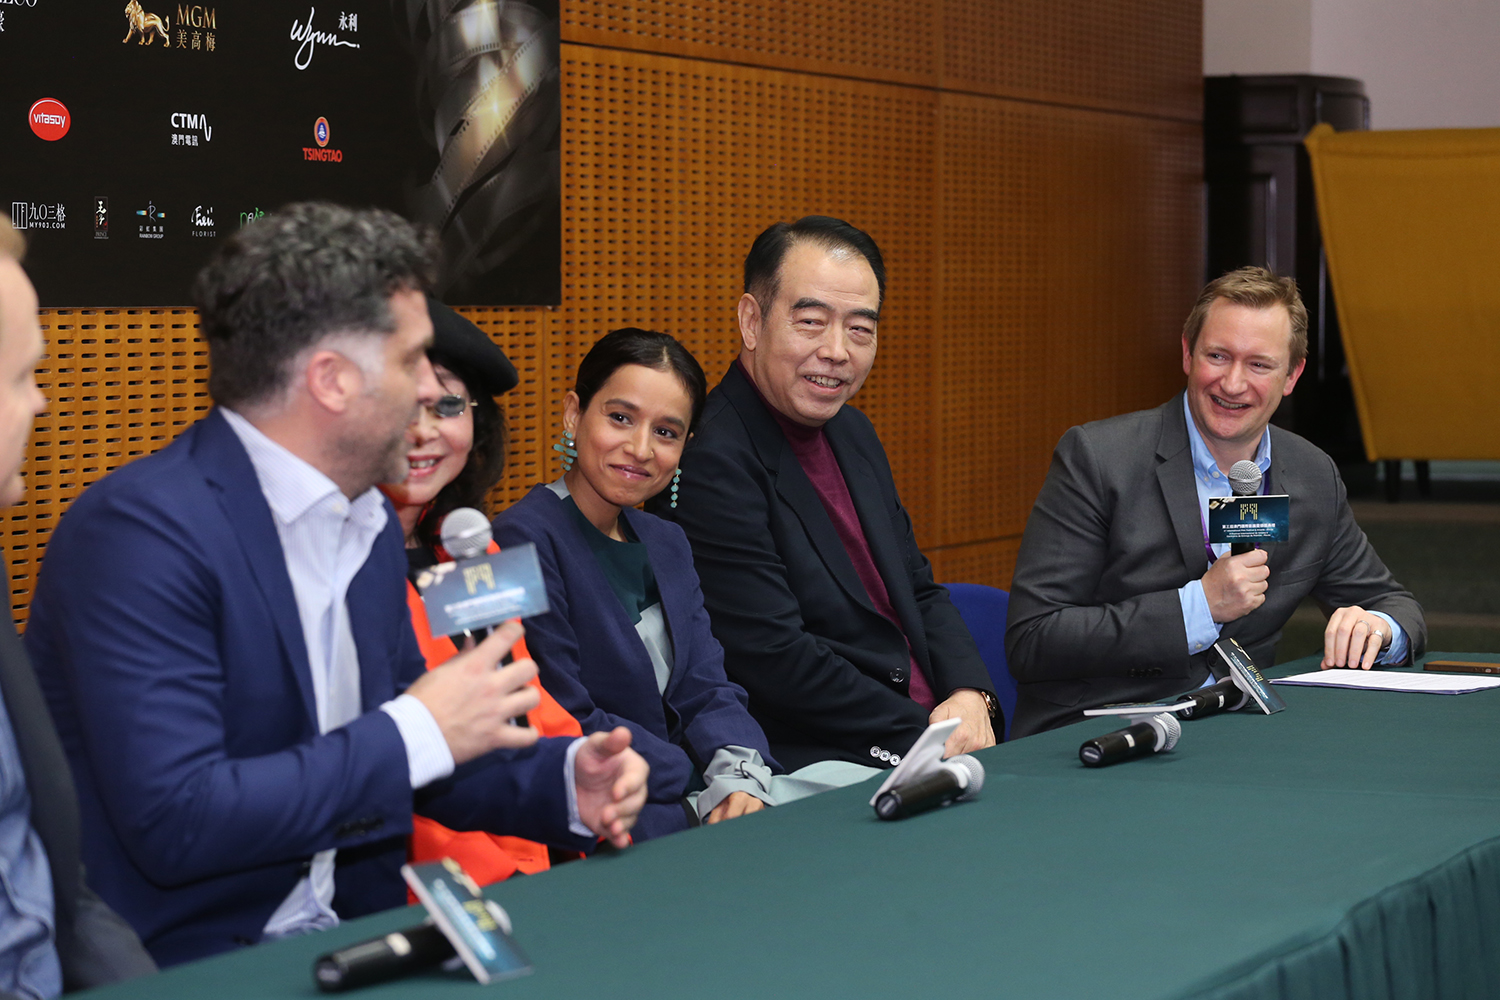 陳凱歌擔任第三屆澳門國際影展評委會主席 榮獲“電影精神成就獎”